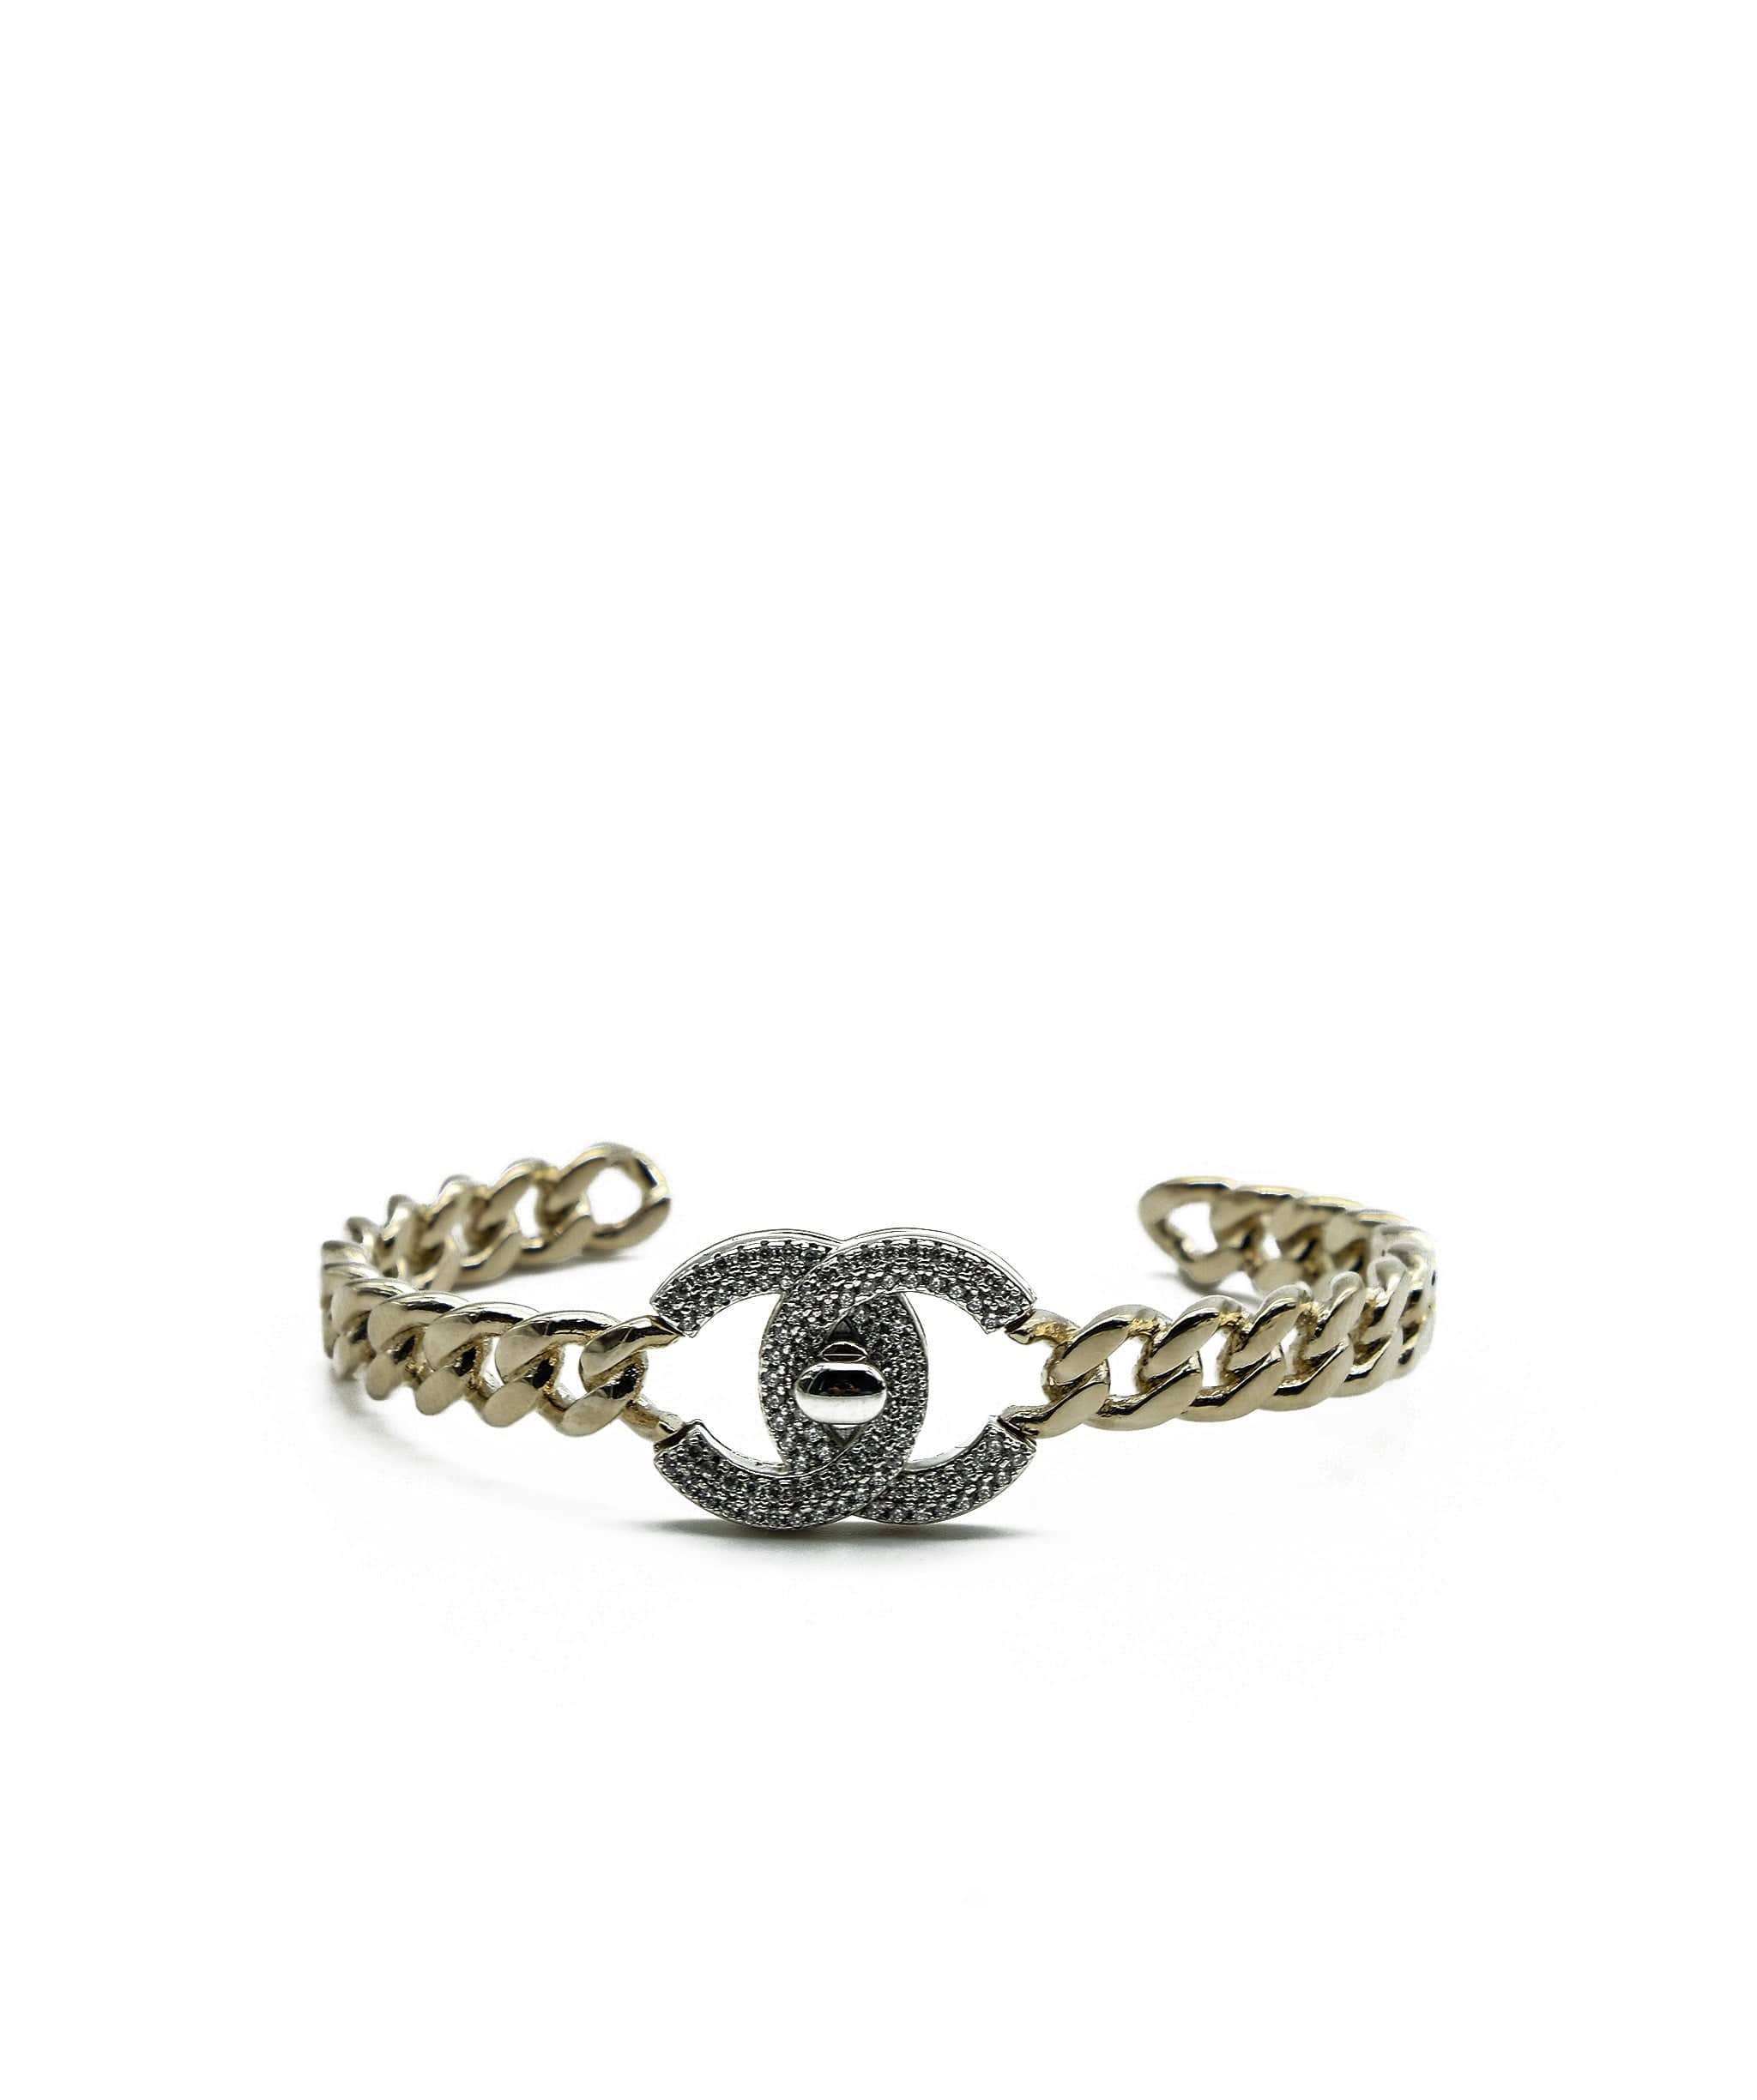 Chanel Chanel Turnlock Bracelet RJC1537